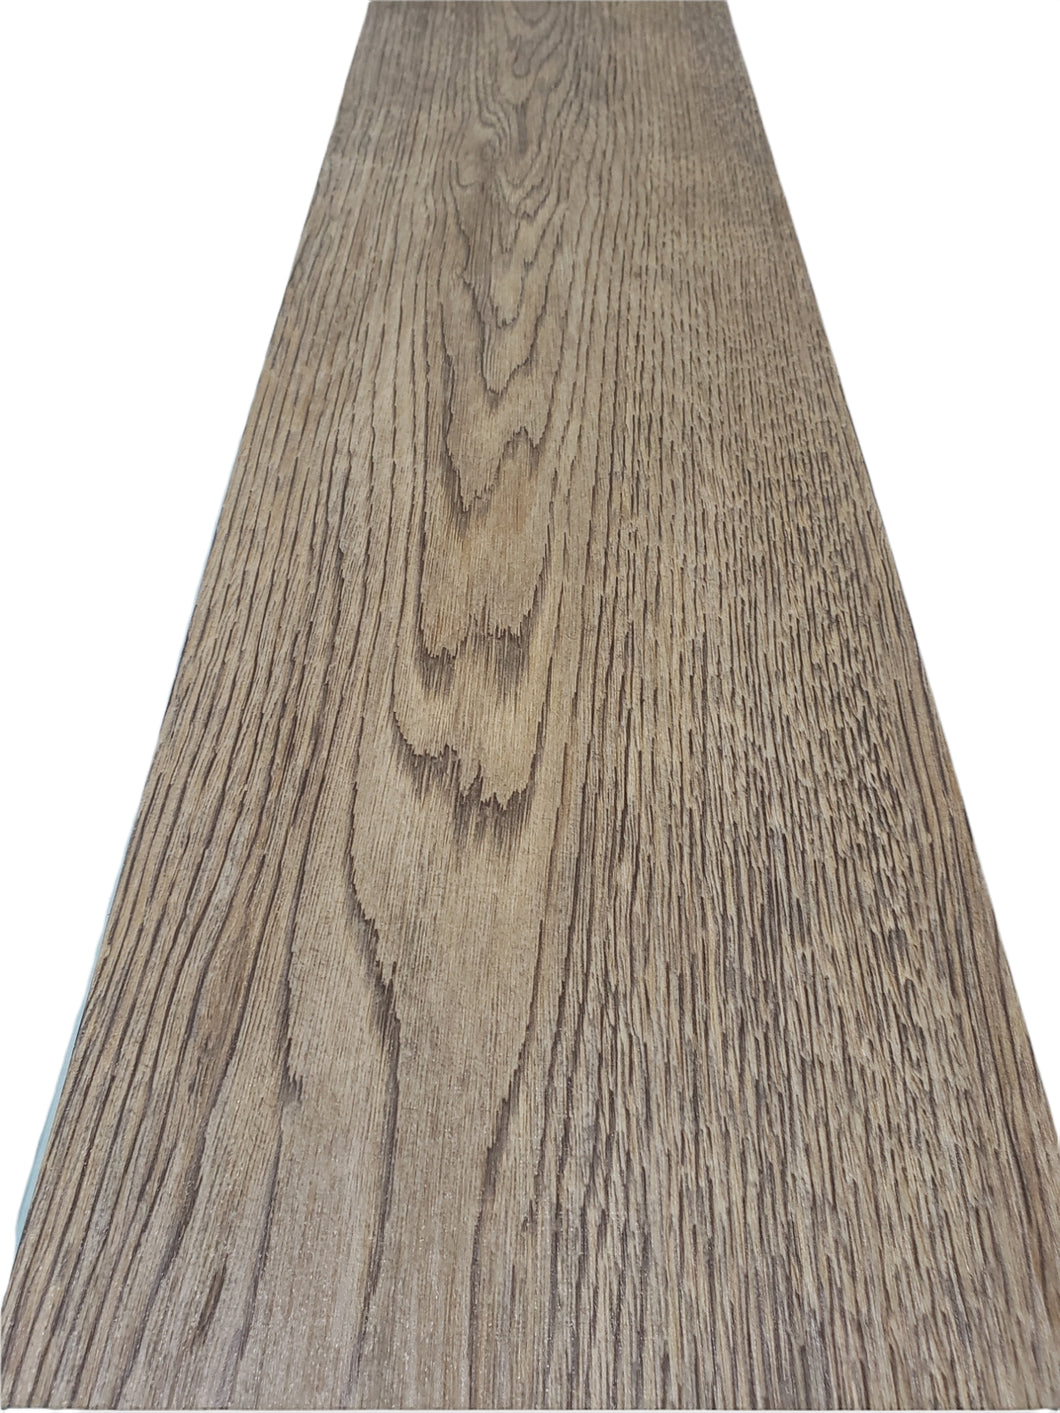 Denali Oak LVT Flooring SPC 4100-12 / 21.62 Sq. Ft./Carton - FreemanLiquidators - [product_description]